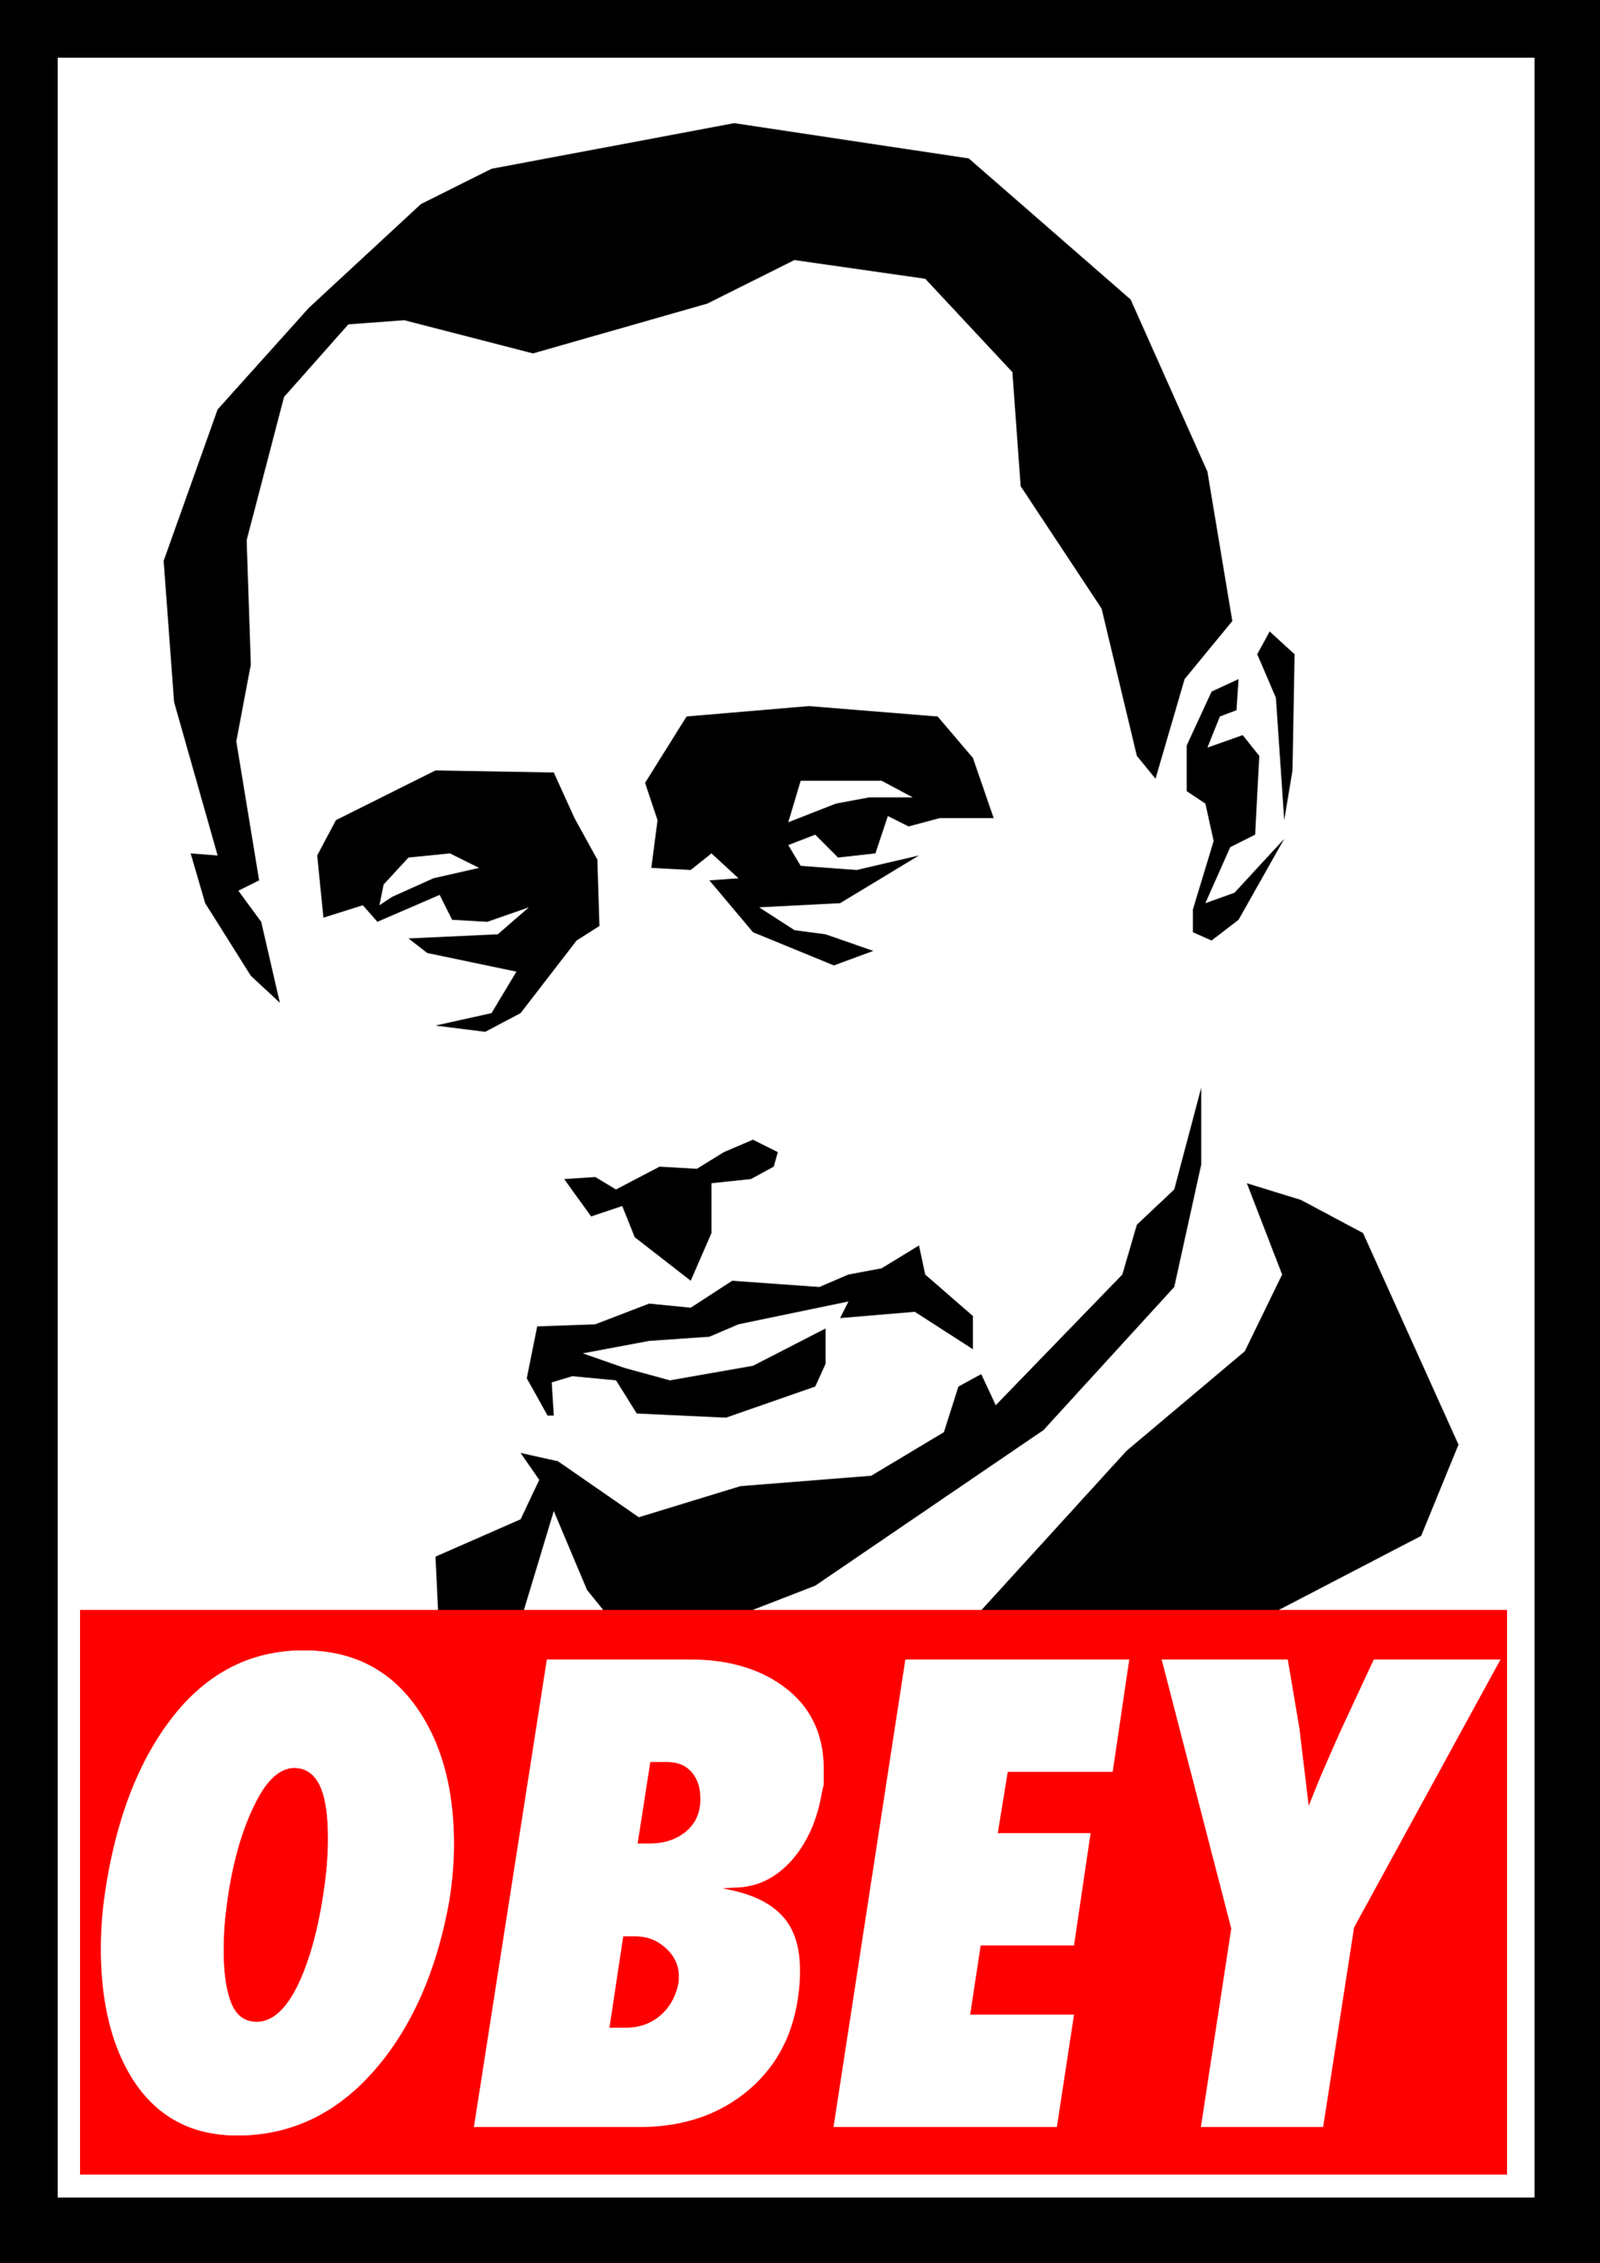 Vladimir Putin logo, logotype